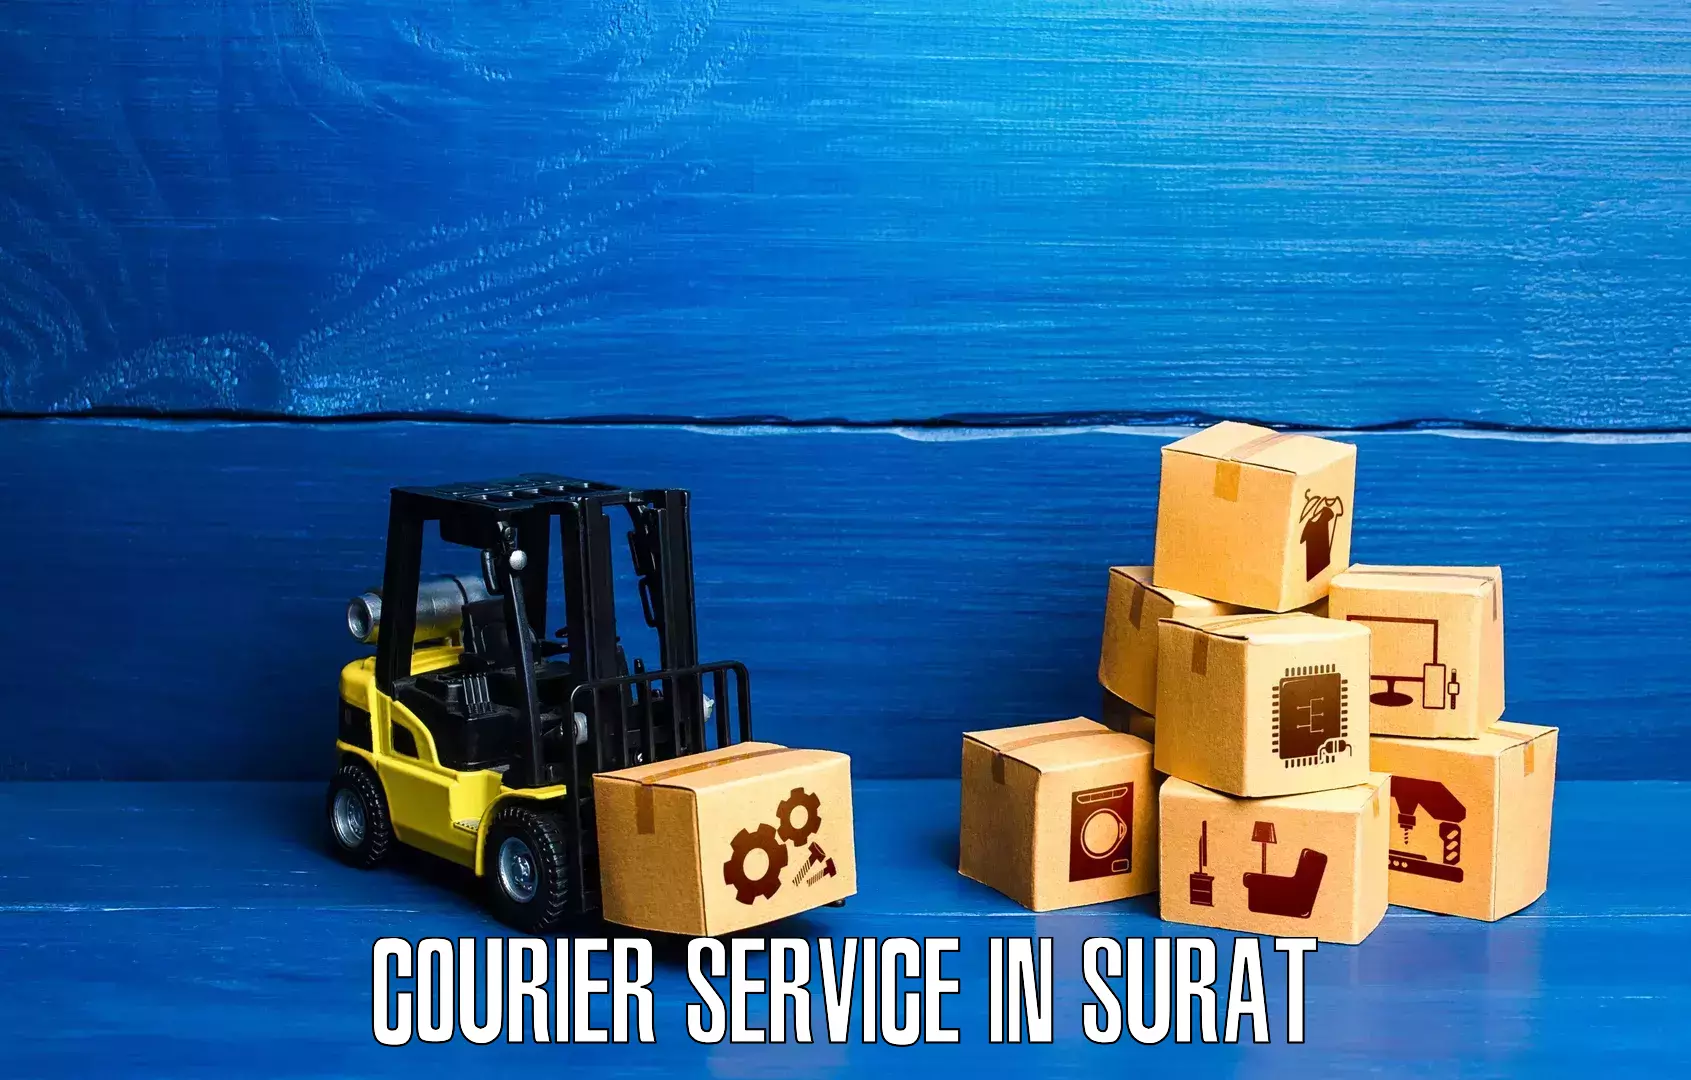 Doorstep delivery service in Surat